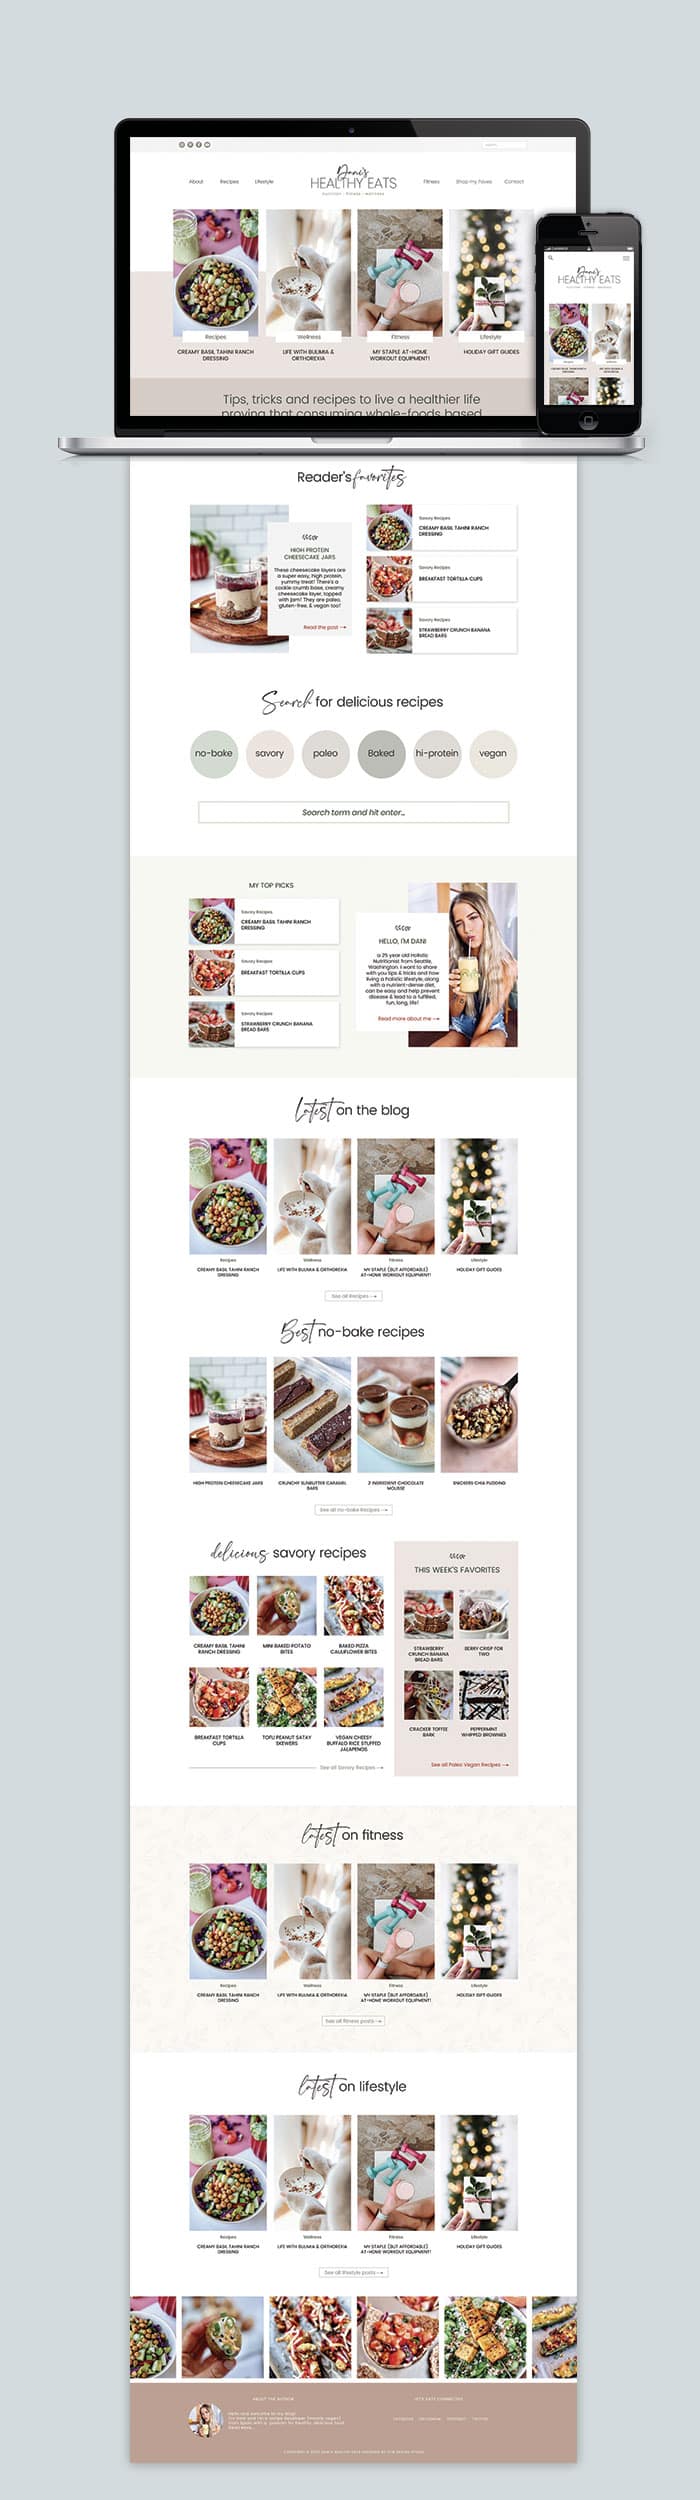 The Homepage of Dani's Healthy Eats Website Design 2022